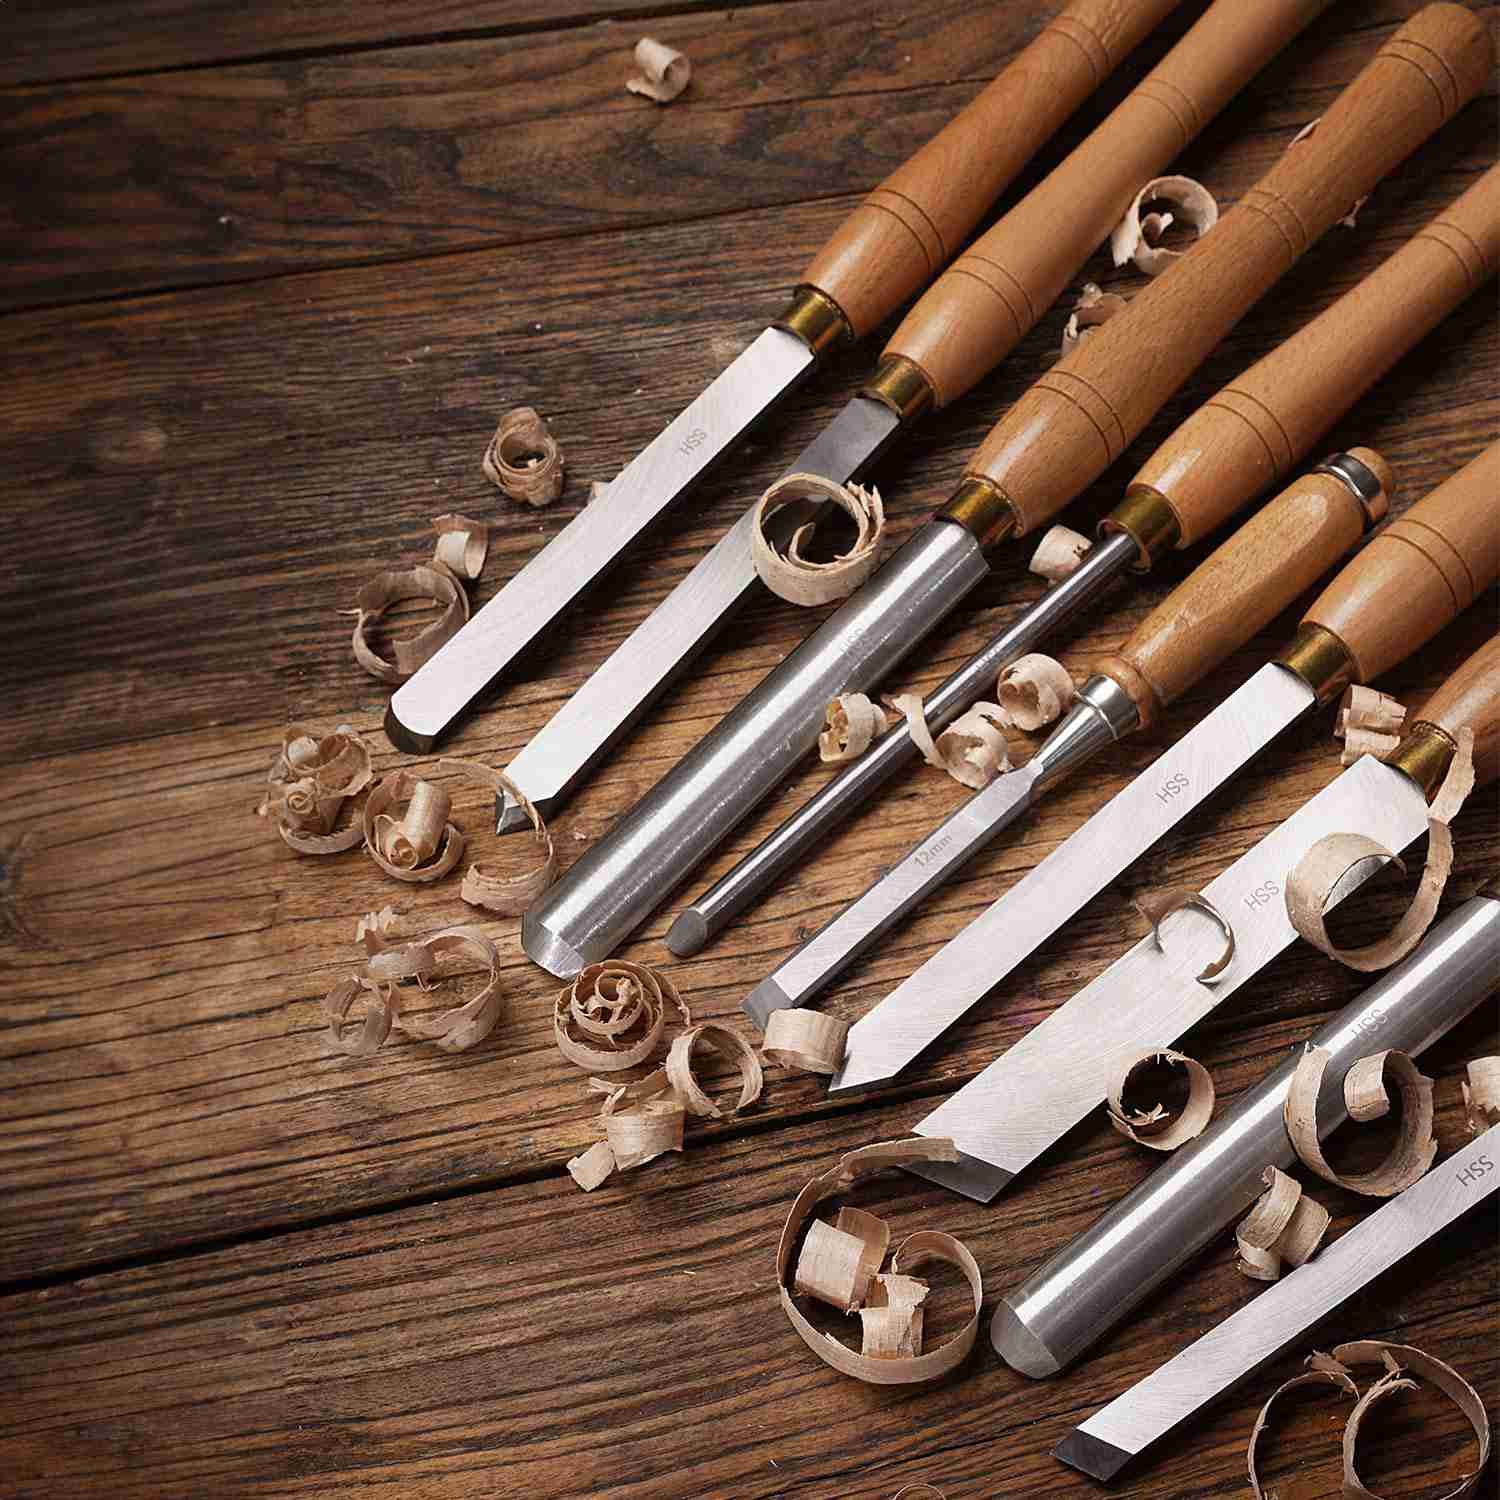 wood-lathe-tools-lathe-chisel-set-wood-lathe-tools with cash back rebate